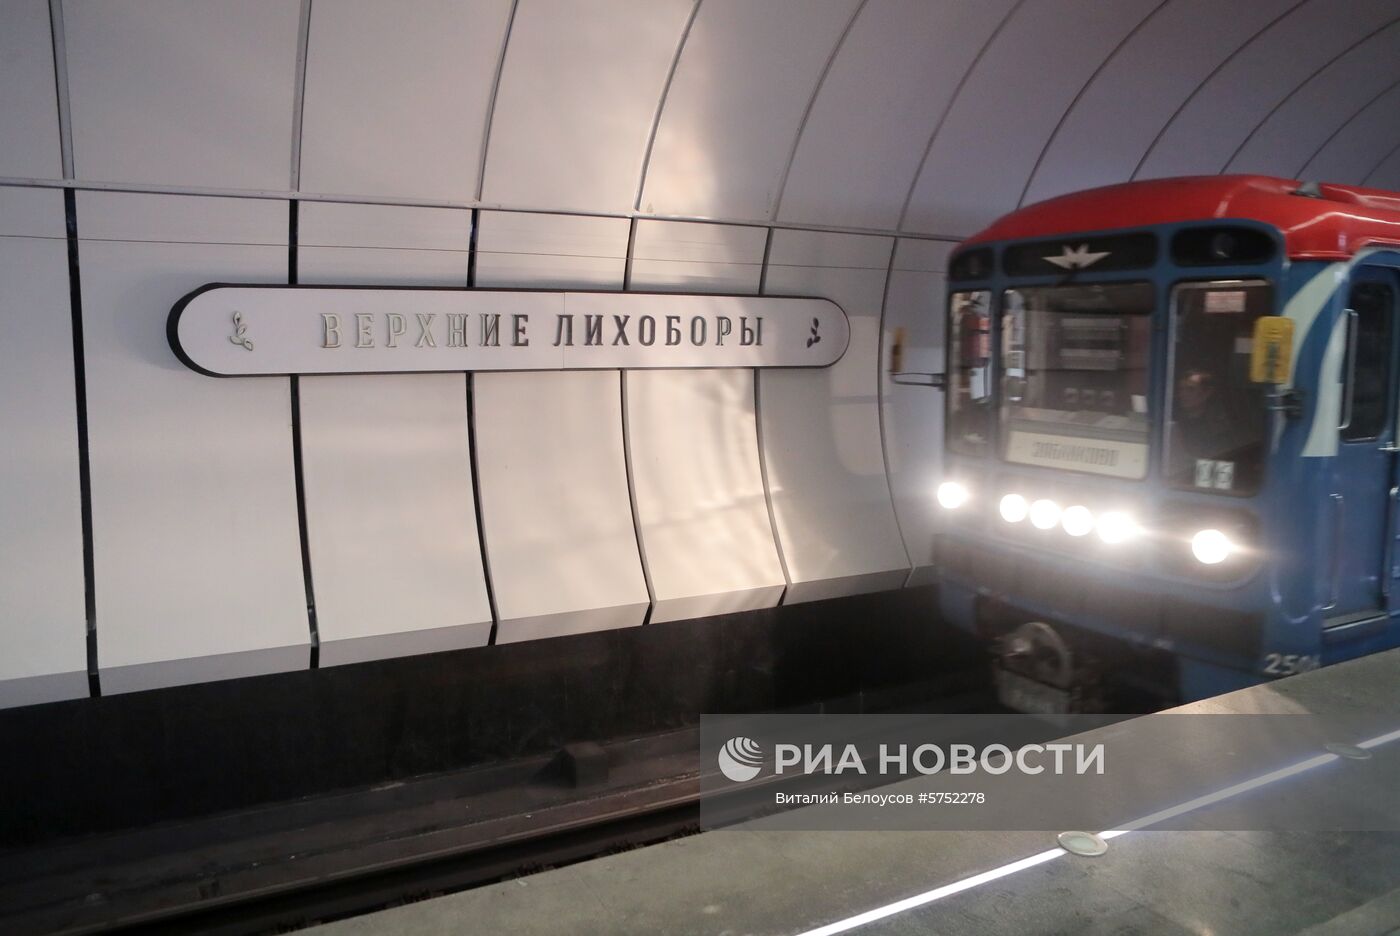 Станции  метро "Окружная", "Верхние Лихоборы" и "Селигерская" временно закрыты из-за подтопления